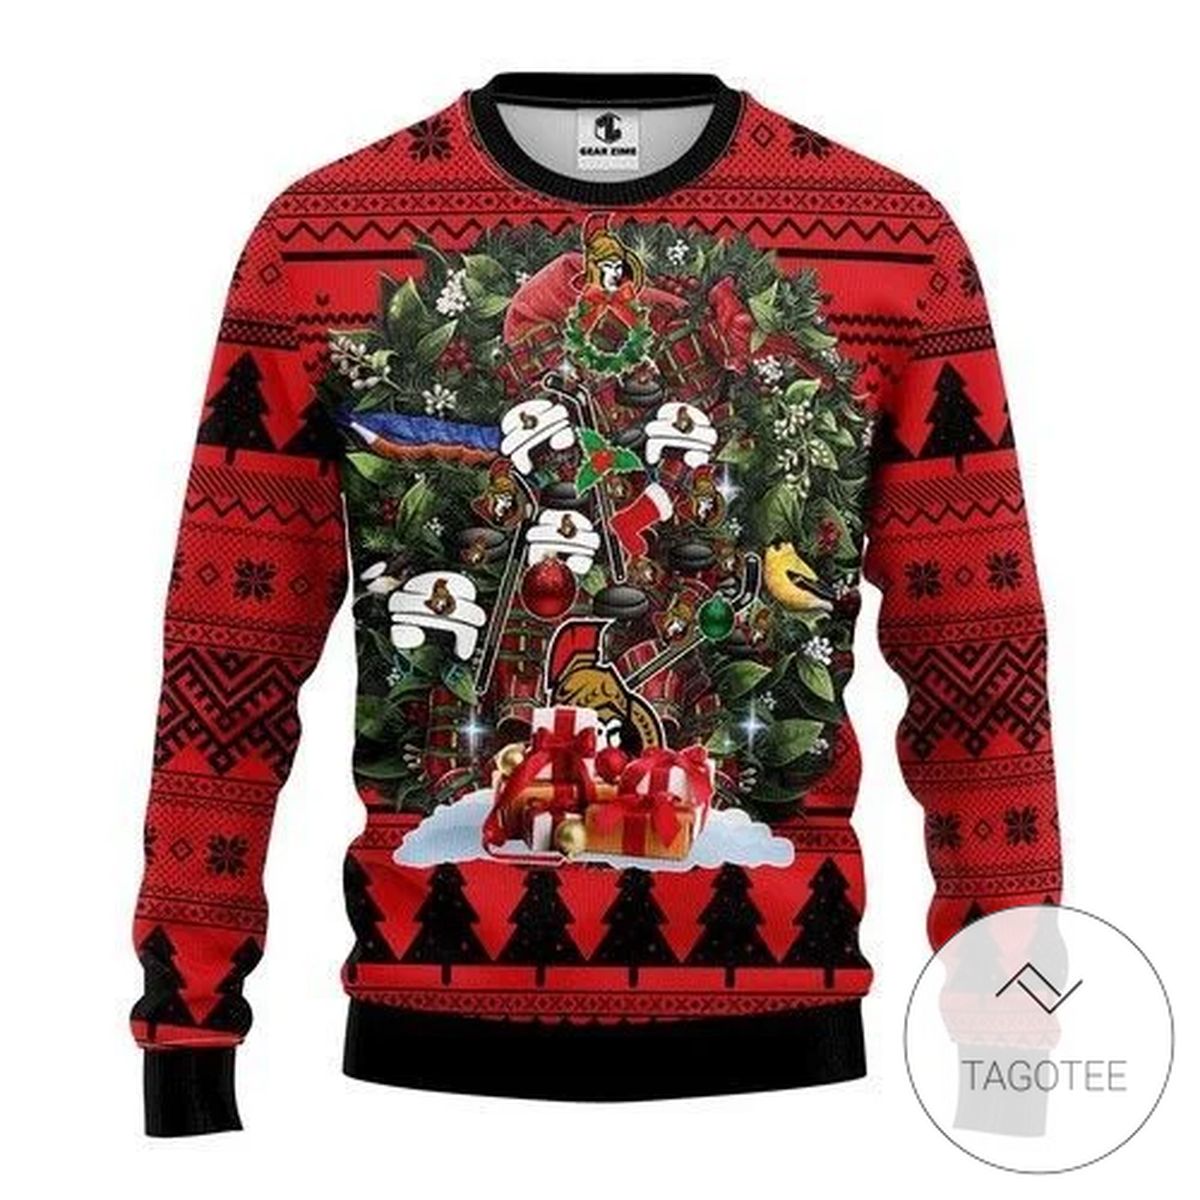 Nhl Ottawa Senators Tree Christmas Sweatshirt Knitted Ugly Christmas Sweater